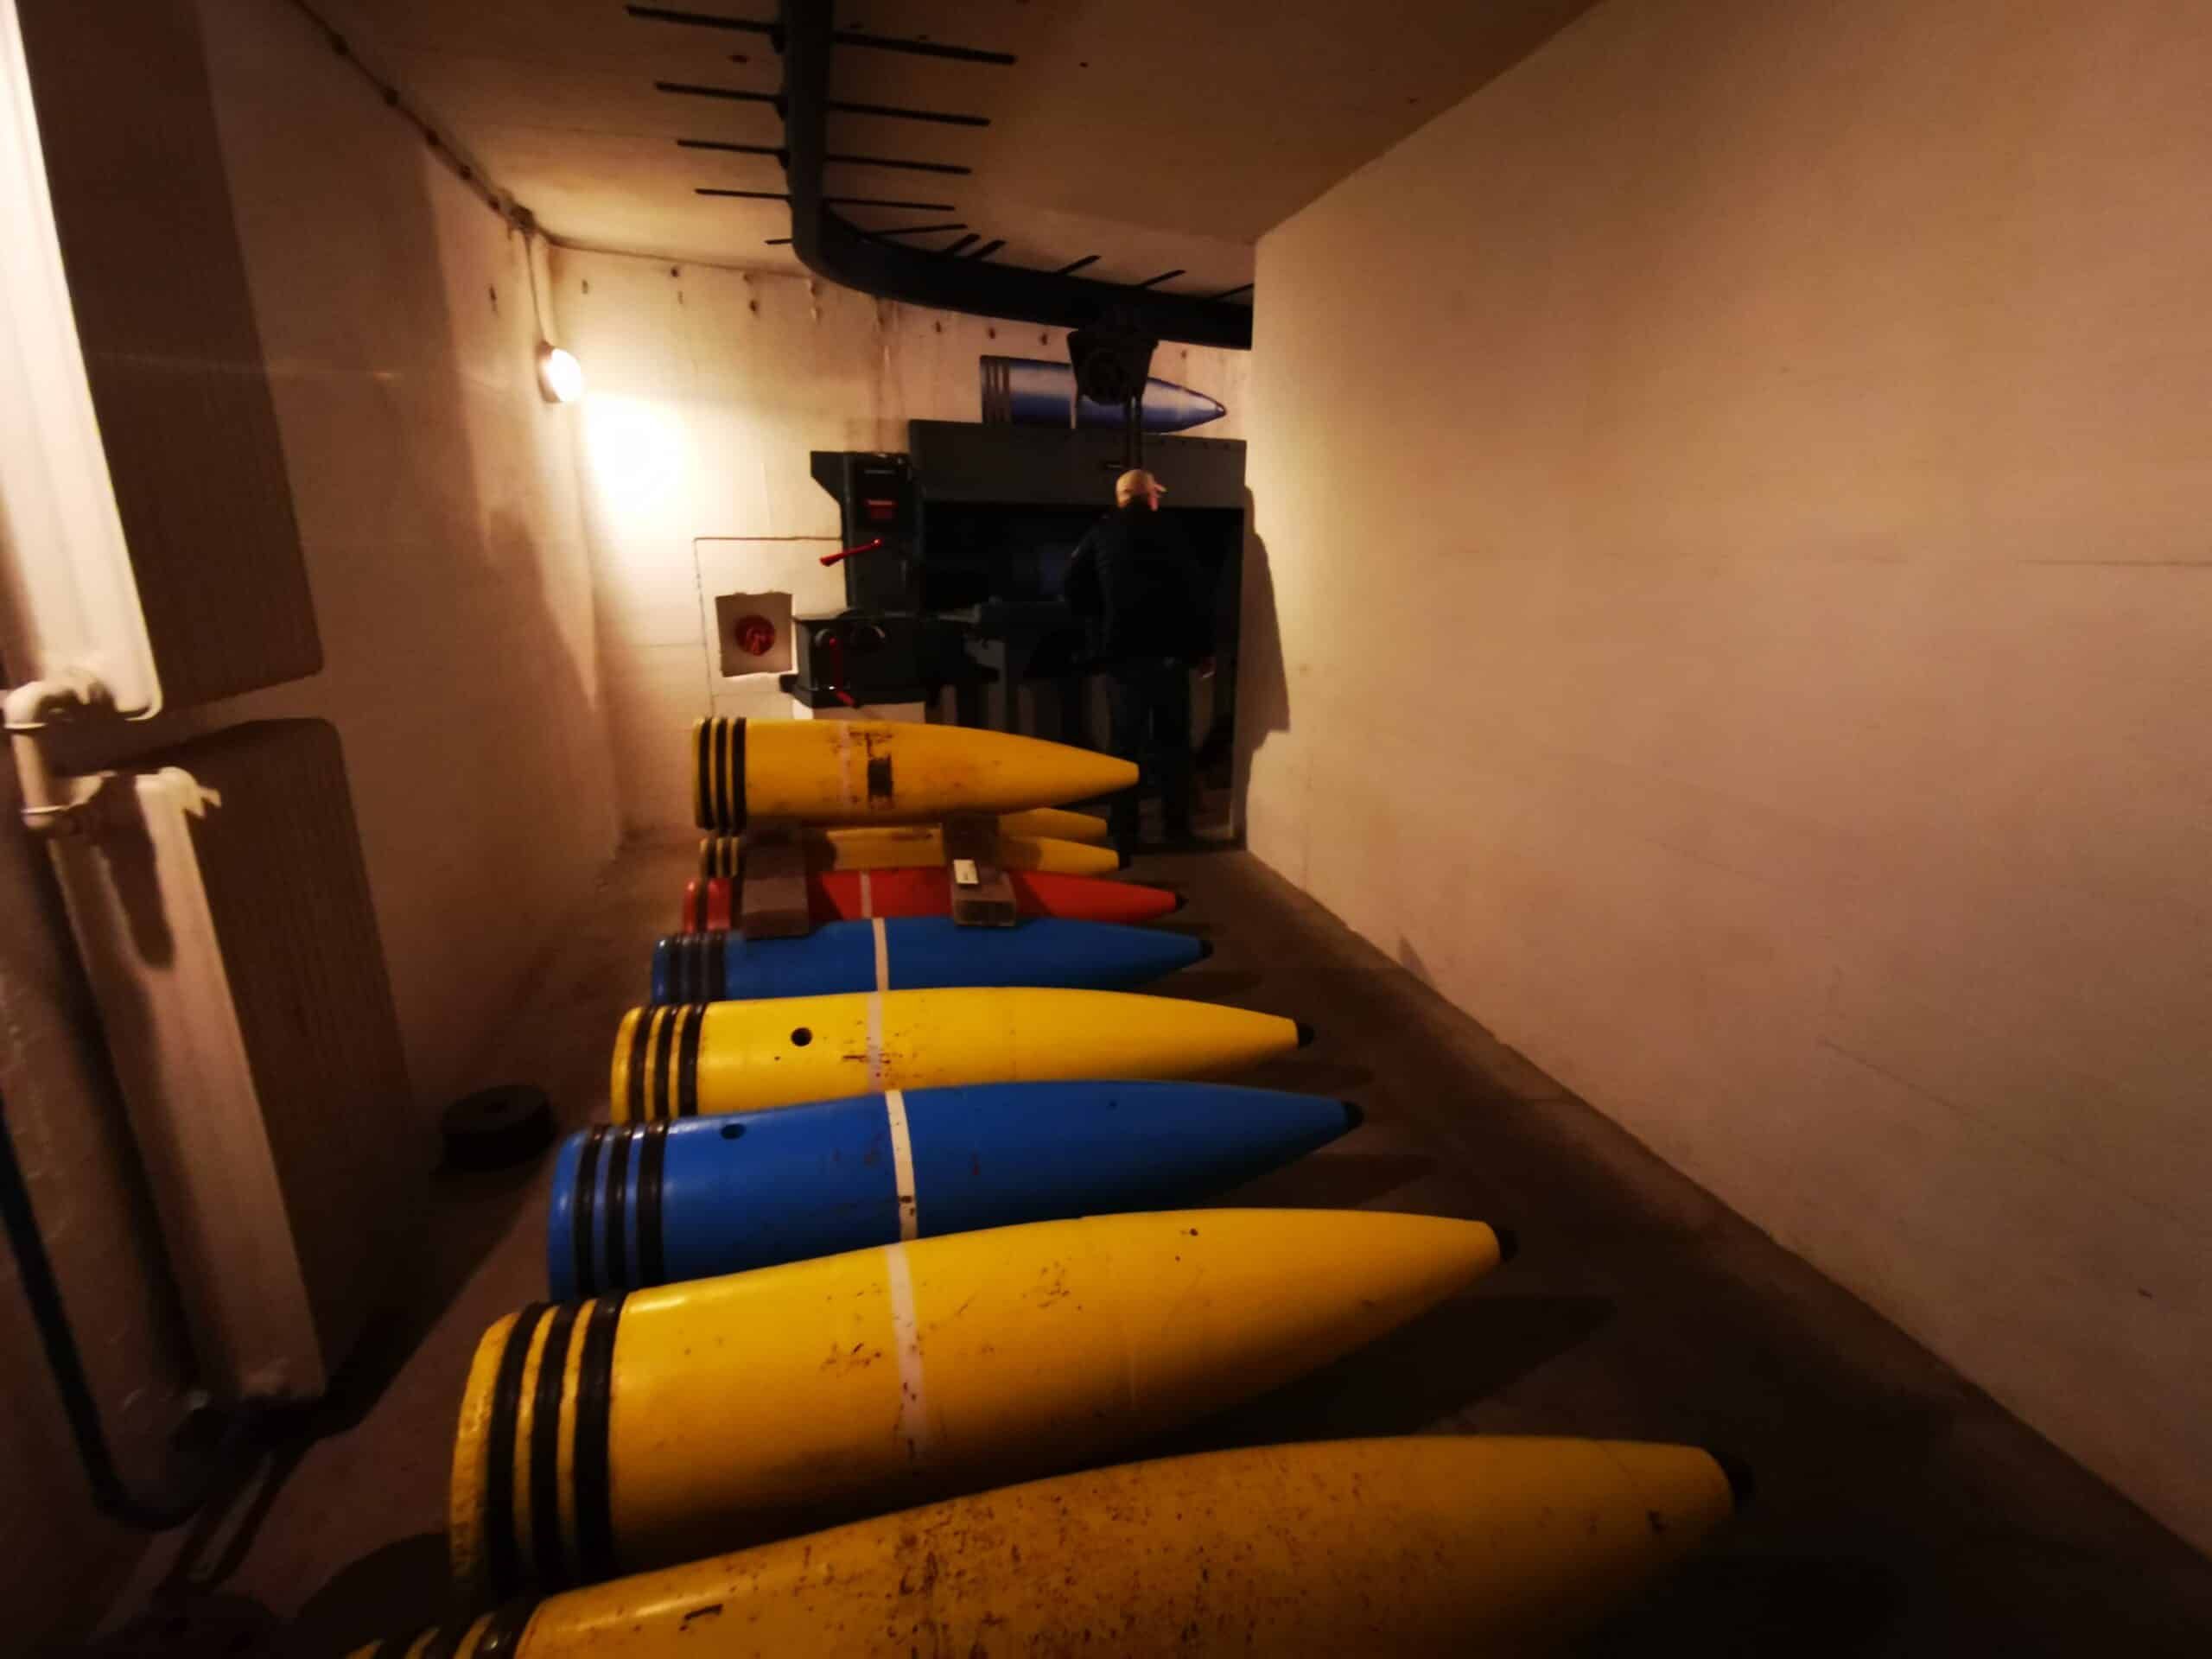 Eine Gruppe gelber und blauer U-Boote steht in einer Reihe in einem Flur.